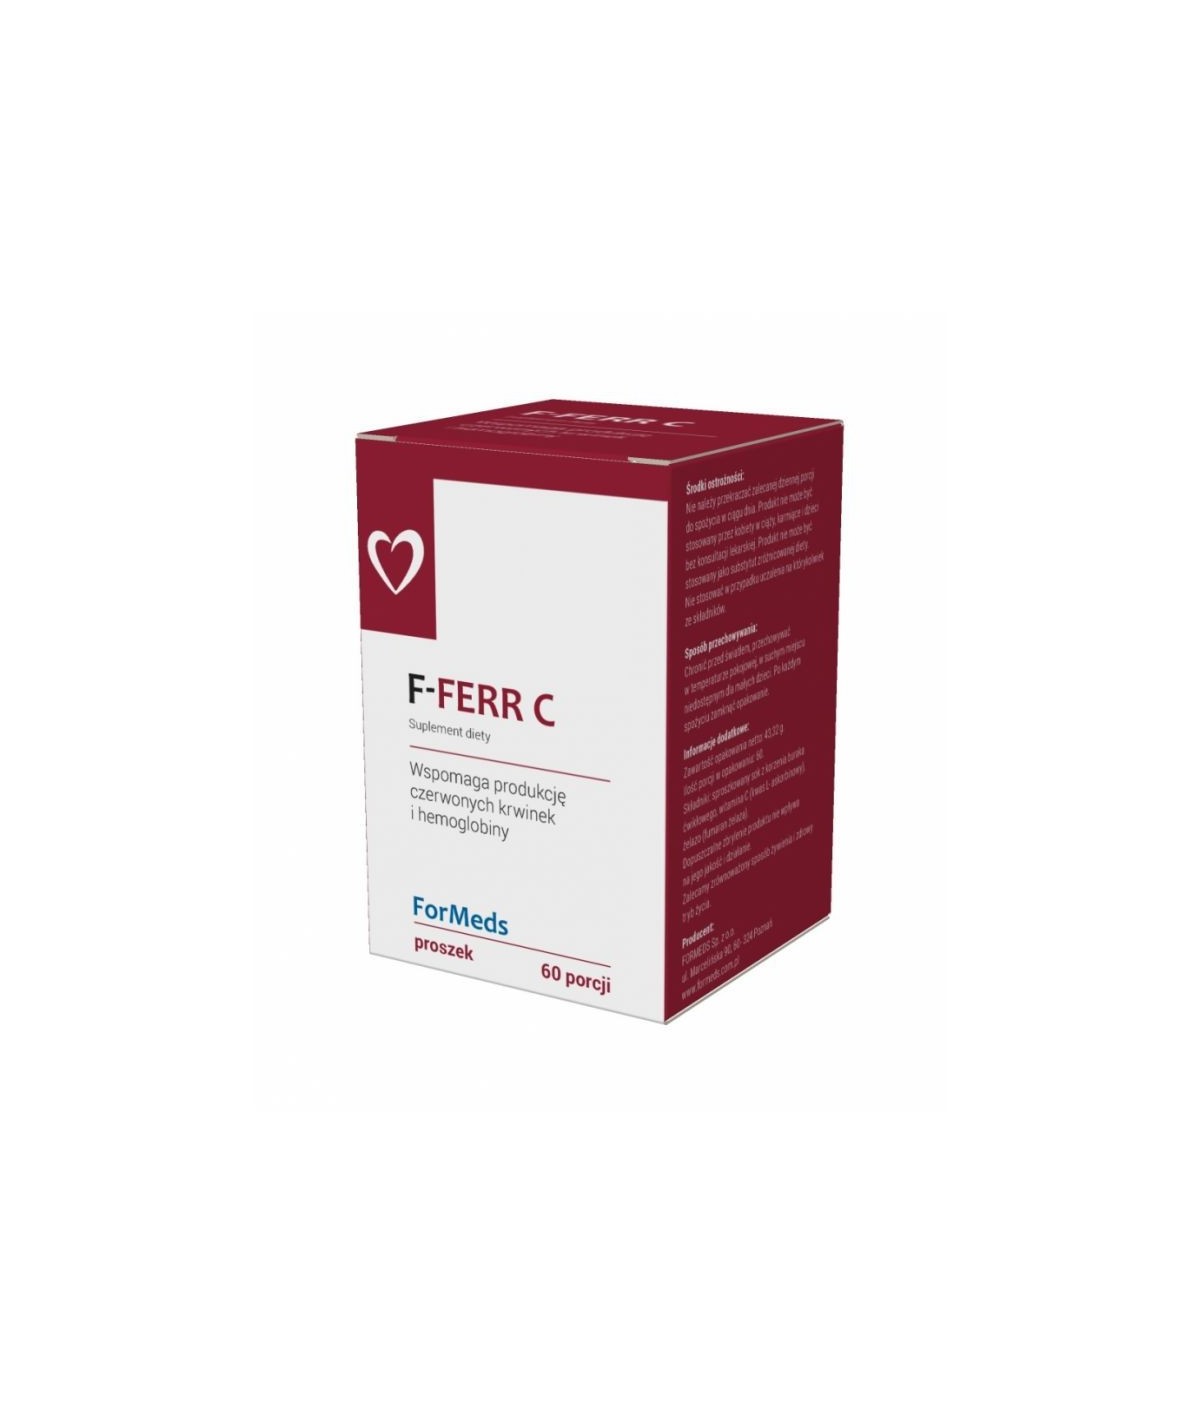 F - FERR C wspomaga produkcję czerwonych krwinek i hemoglobiny - 60 porcji (43g)